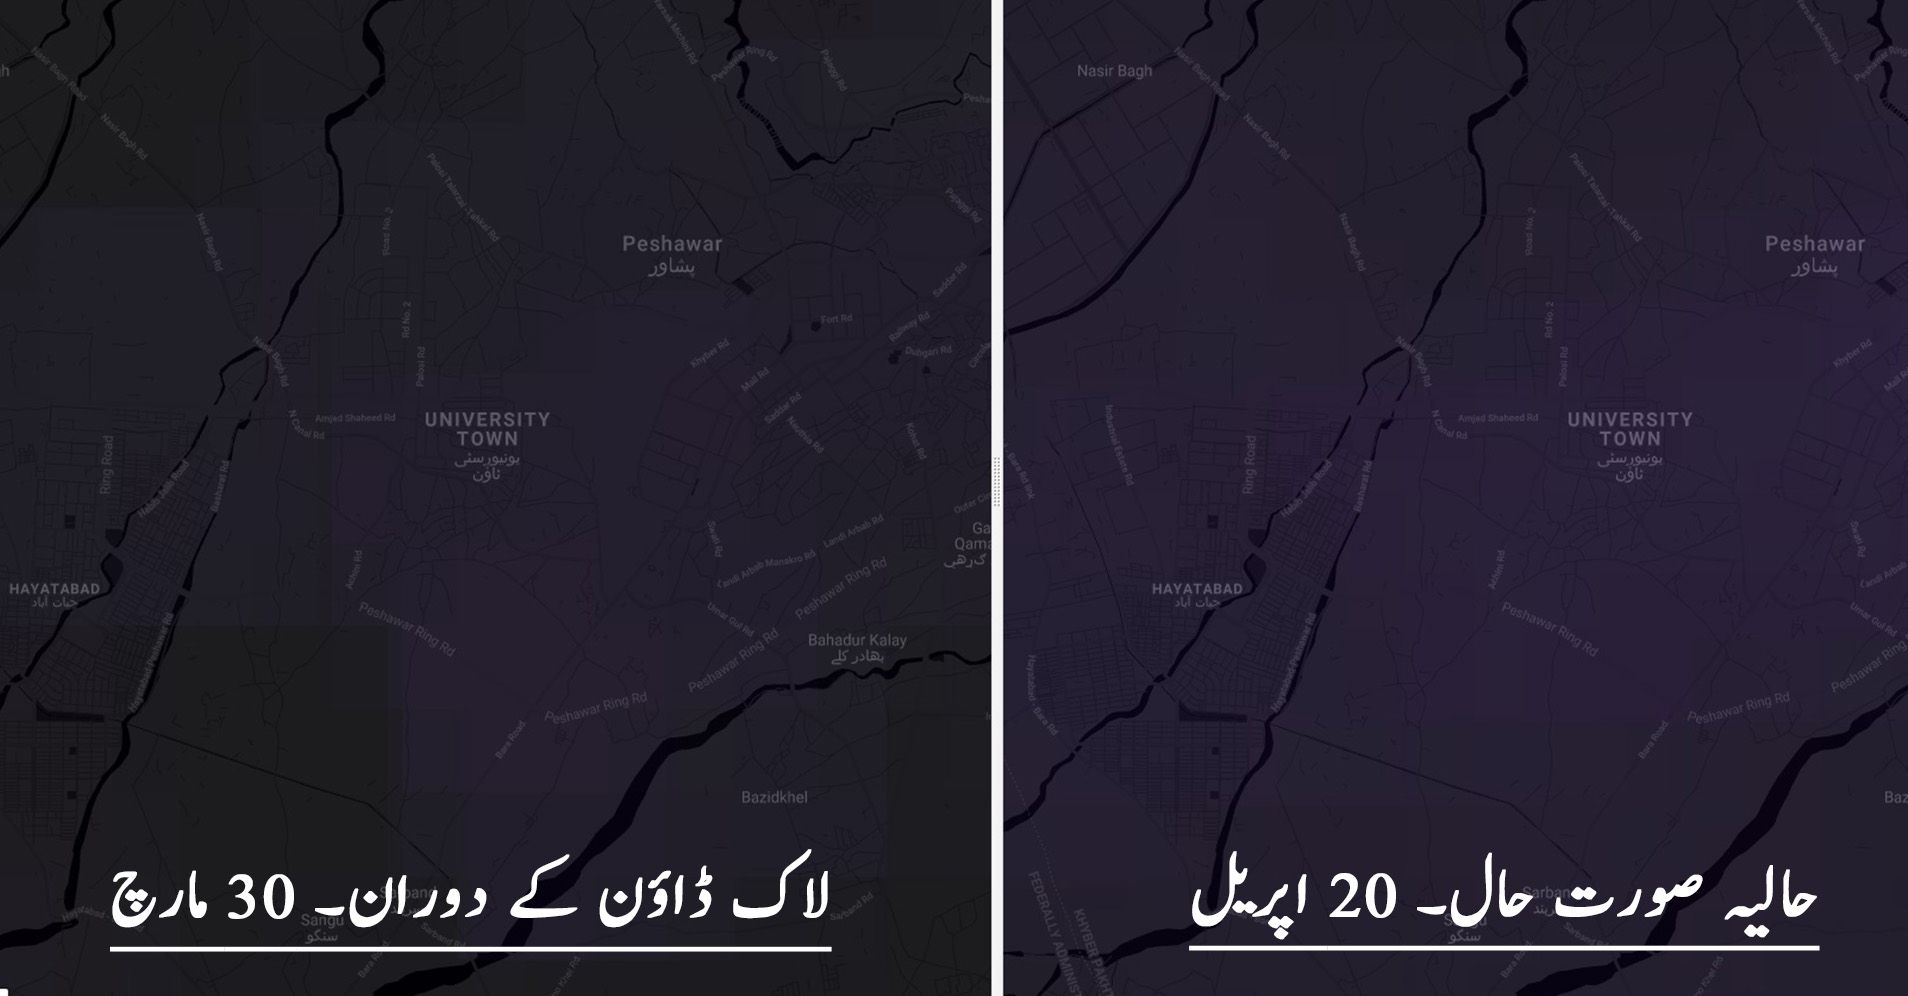 Peshawar.jpg